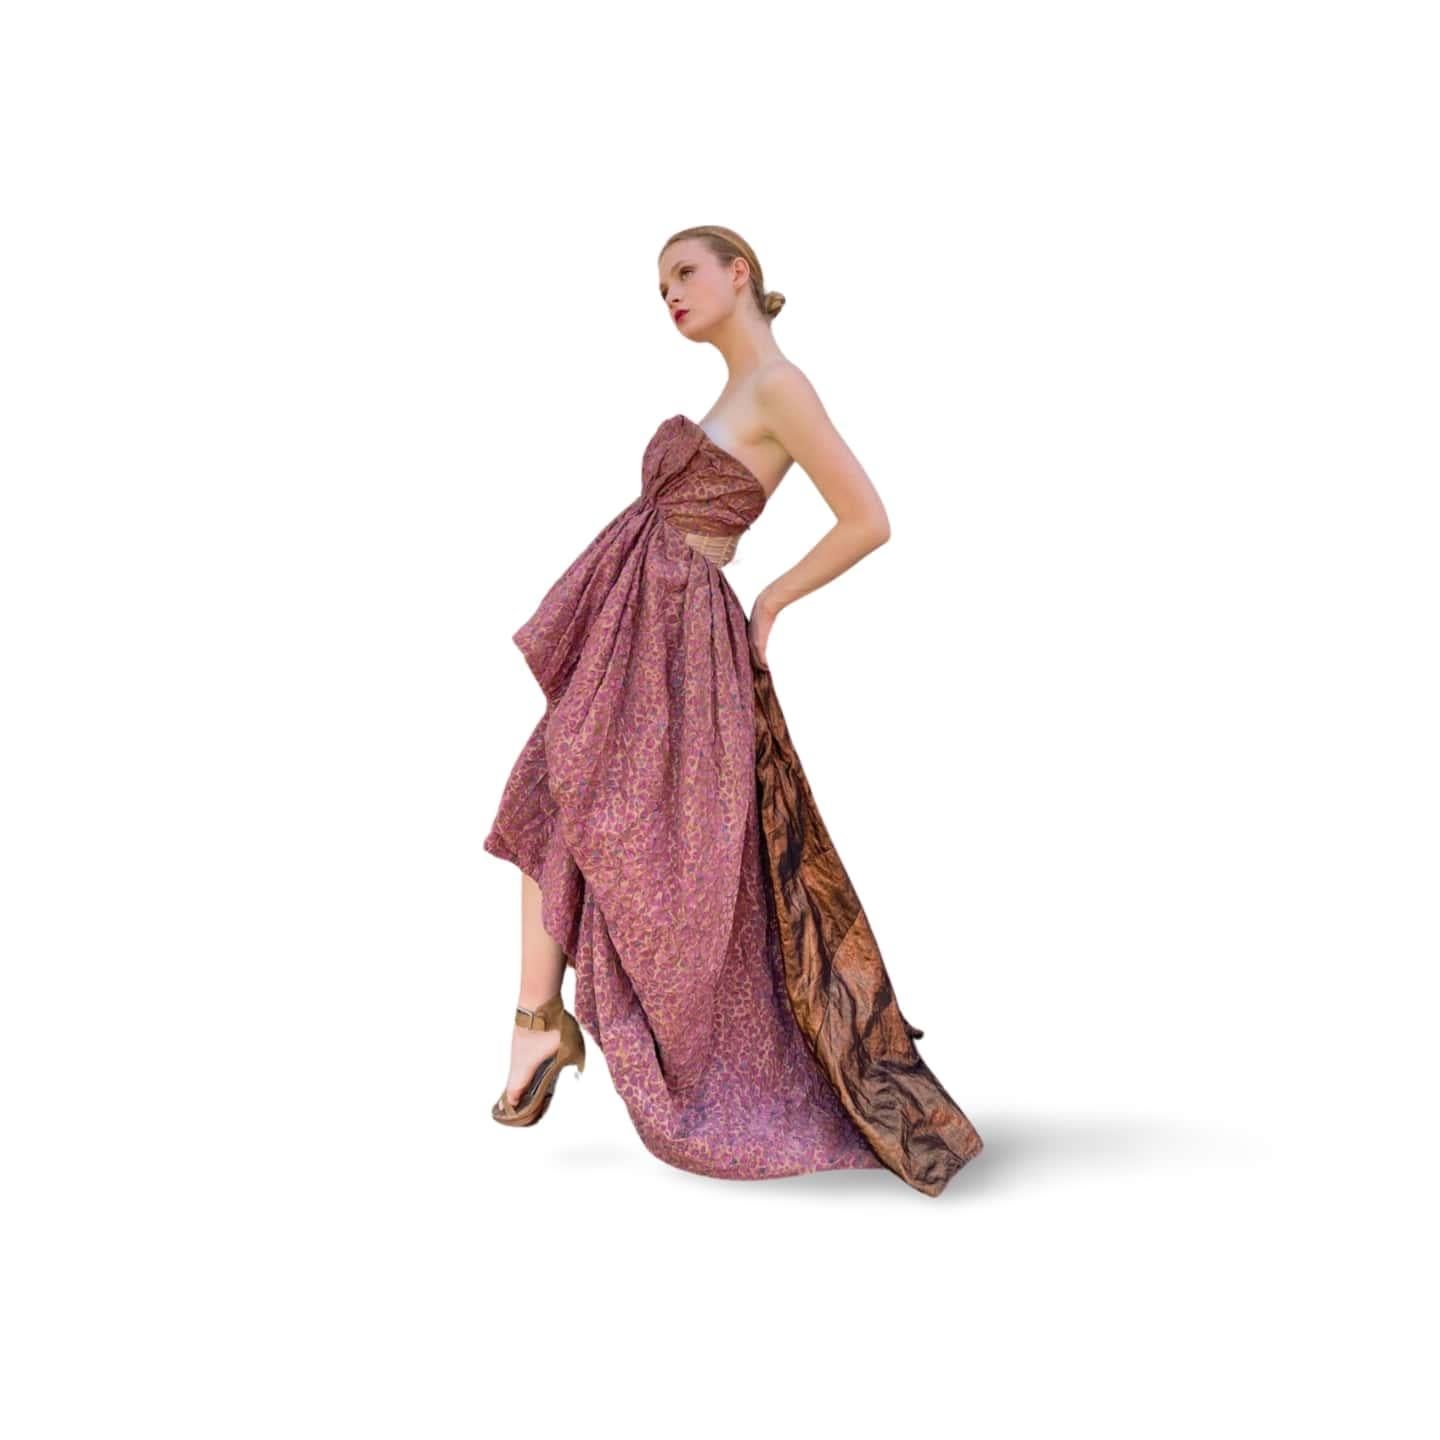 Portée par Eleg MacPherson lors de la finale du défilé Louis Vuitton 2010, cette élégante robe est composée de différents tissus qui font ressortir l'aspect dramatique de la pièce.
Ayez l'air d'une star dans cette robe Louis Vuitton by Marc Jacobs